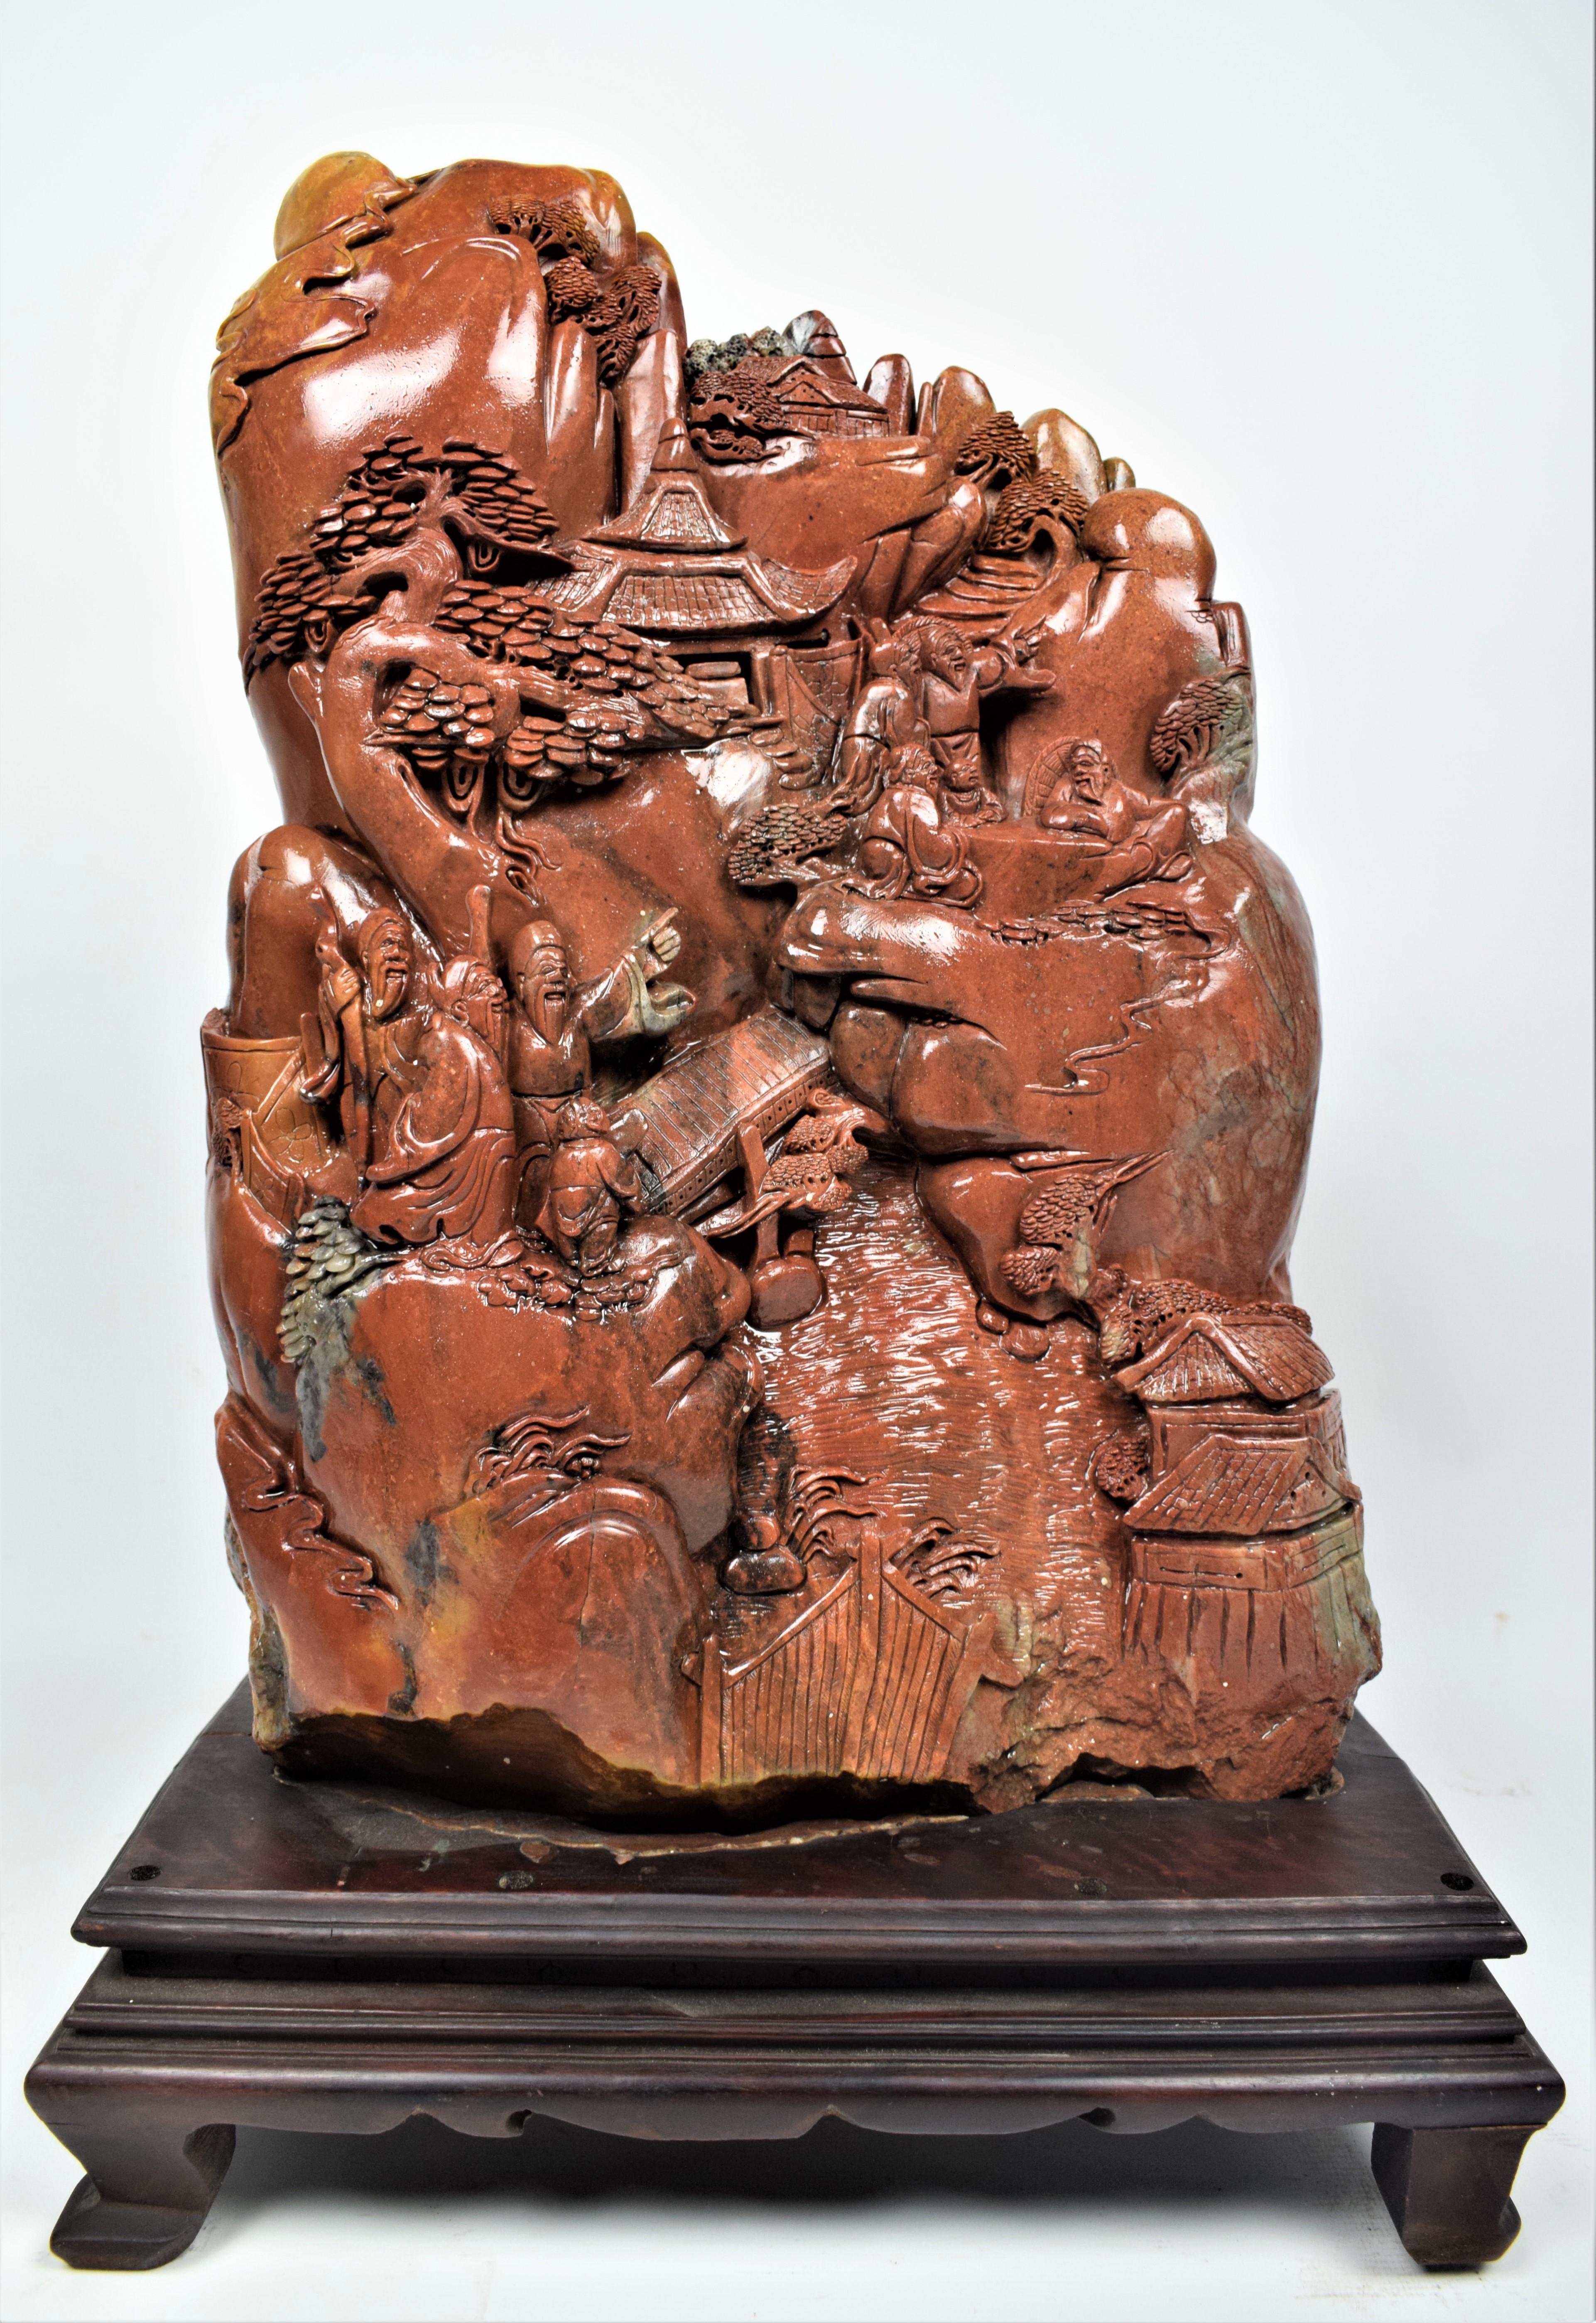 Die chinesische Specksteinschnitzerei aus der Mitte des 20. Jahrhunderts, die eine Dorfszene darstellt, ist ein beeindruckendes Kunstwerk mit komplizierten Details und kultureller Bedeutung. Die Schnitzerei zeigt ein traditionelles chinesisches Dorf